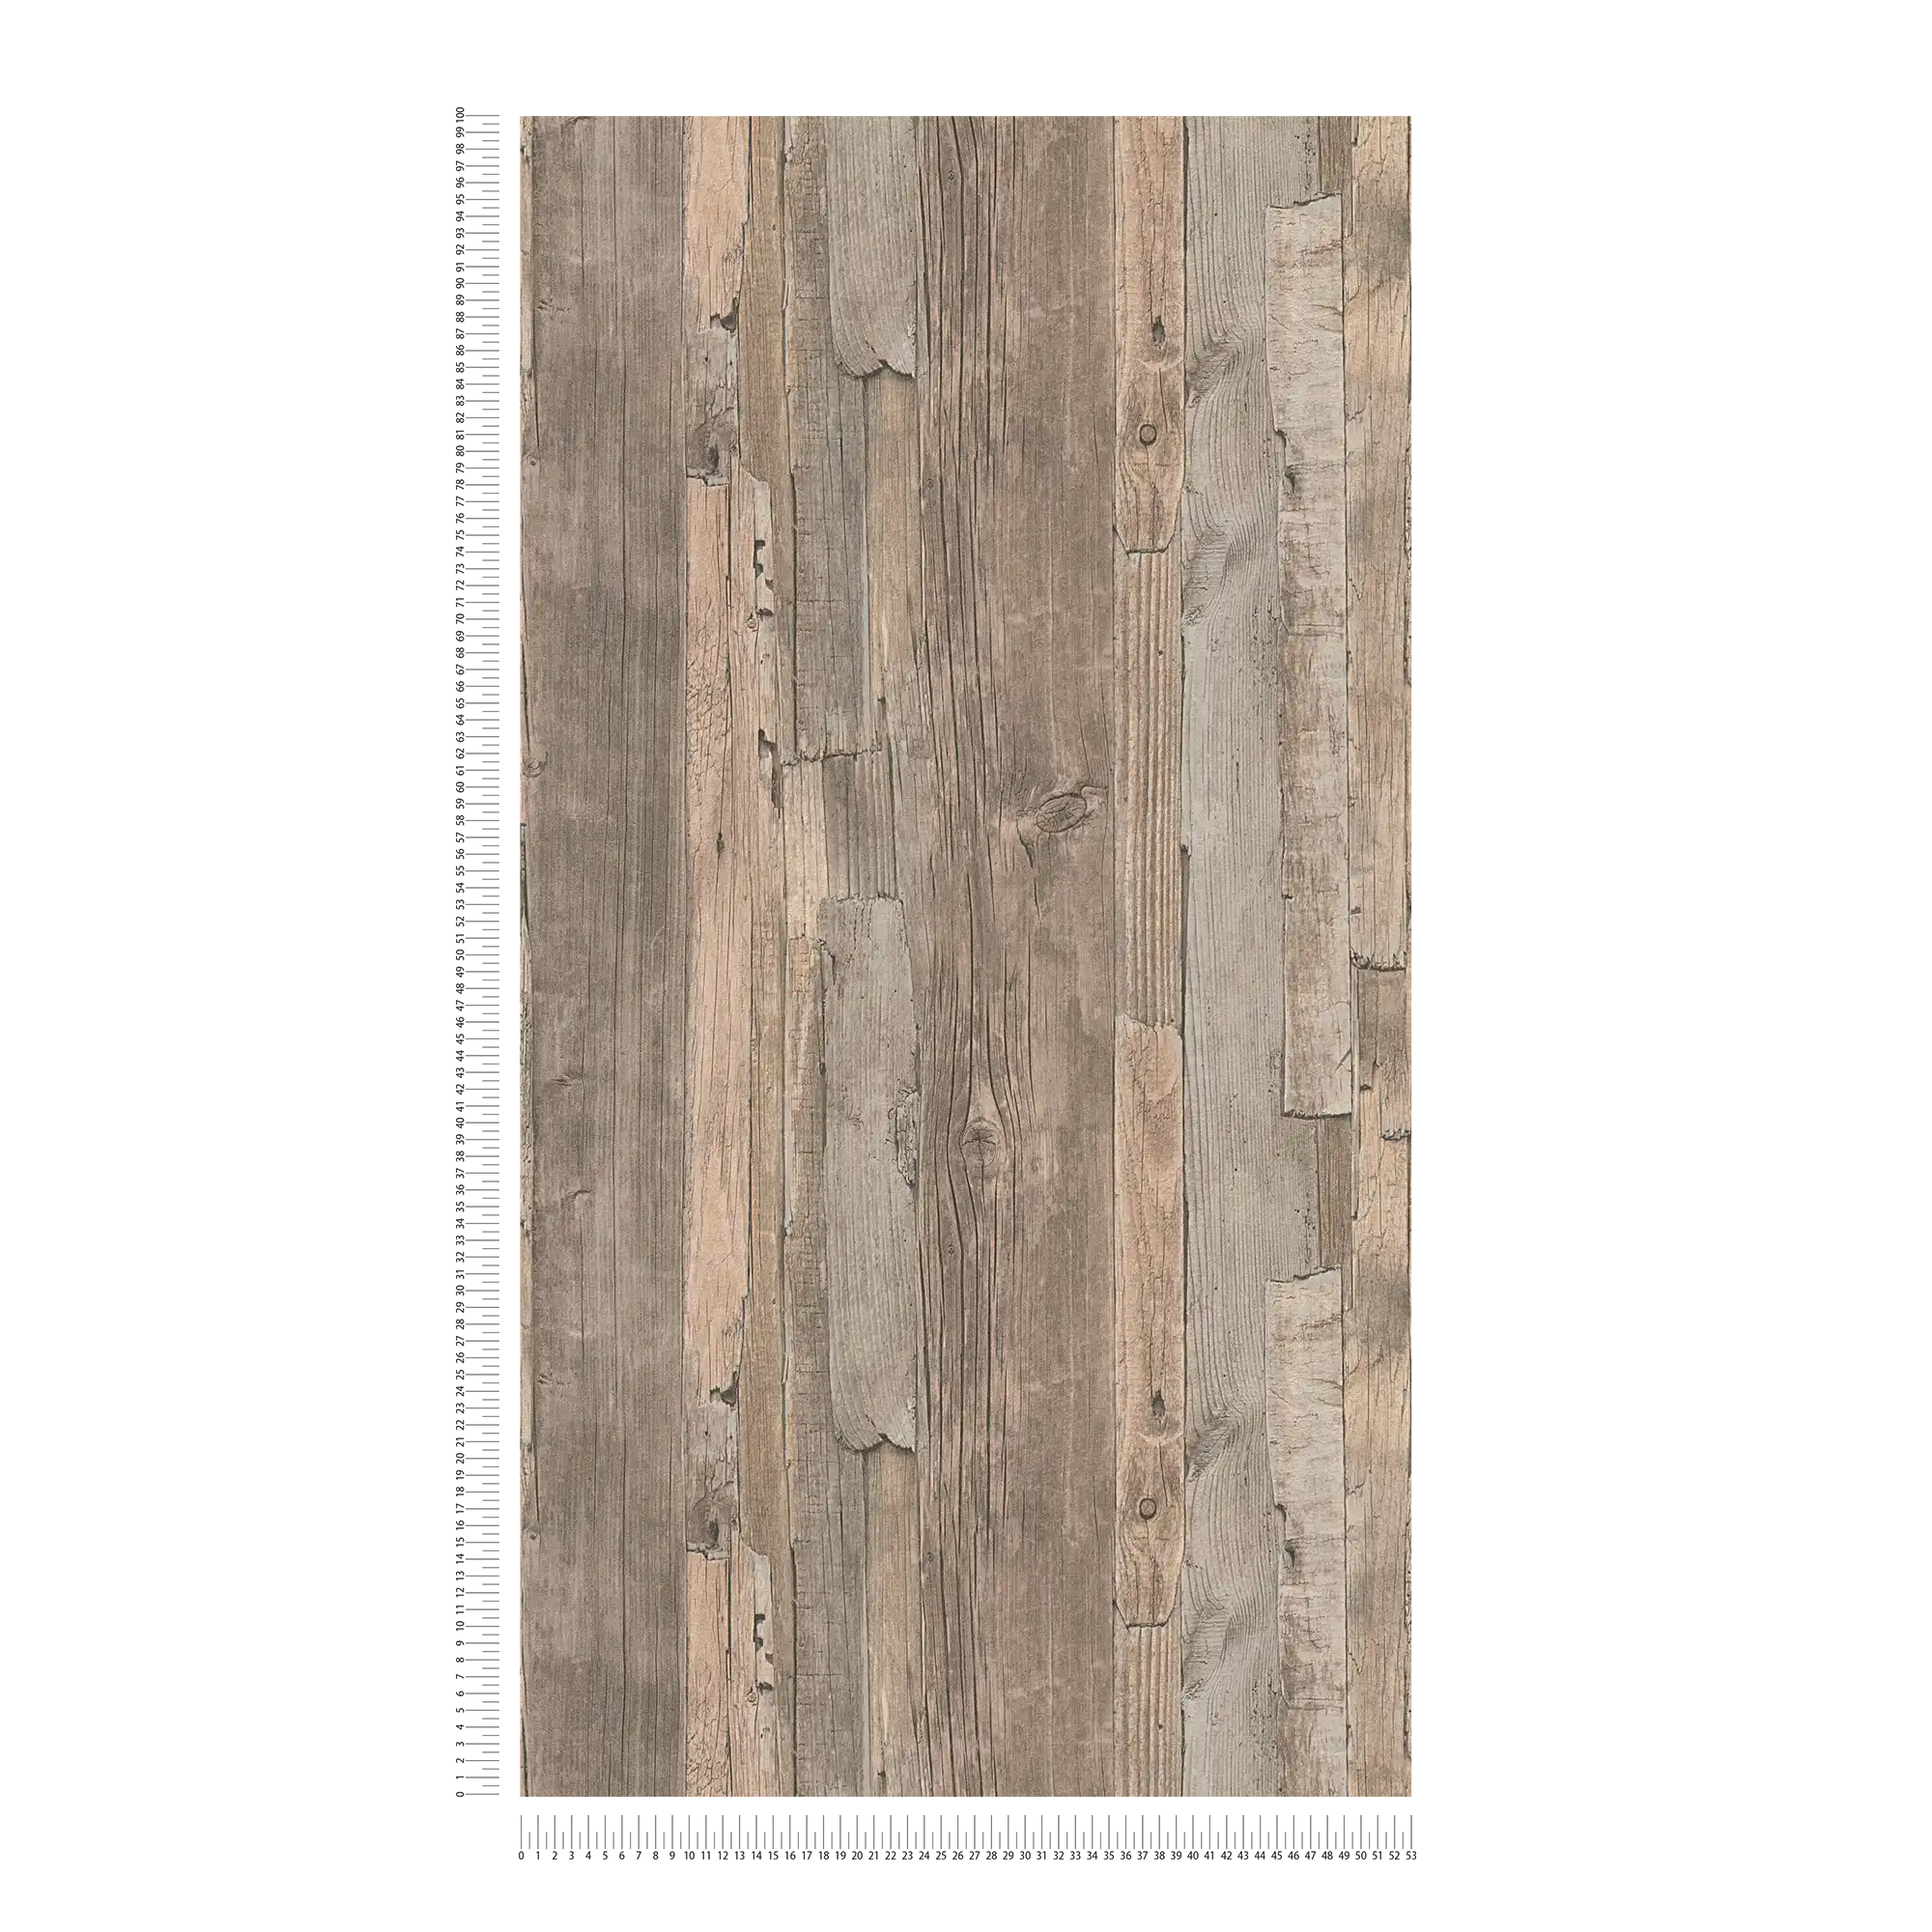             Behang met plankenpatroon, hout in gebruikt design - beige, bruin
        